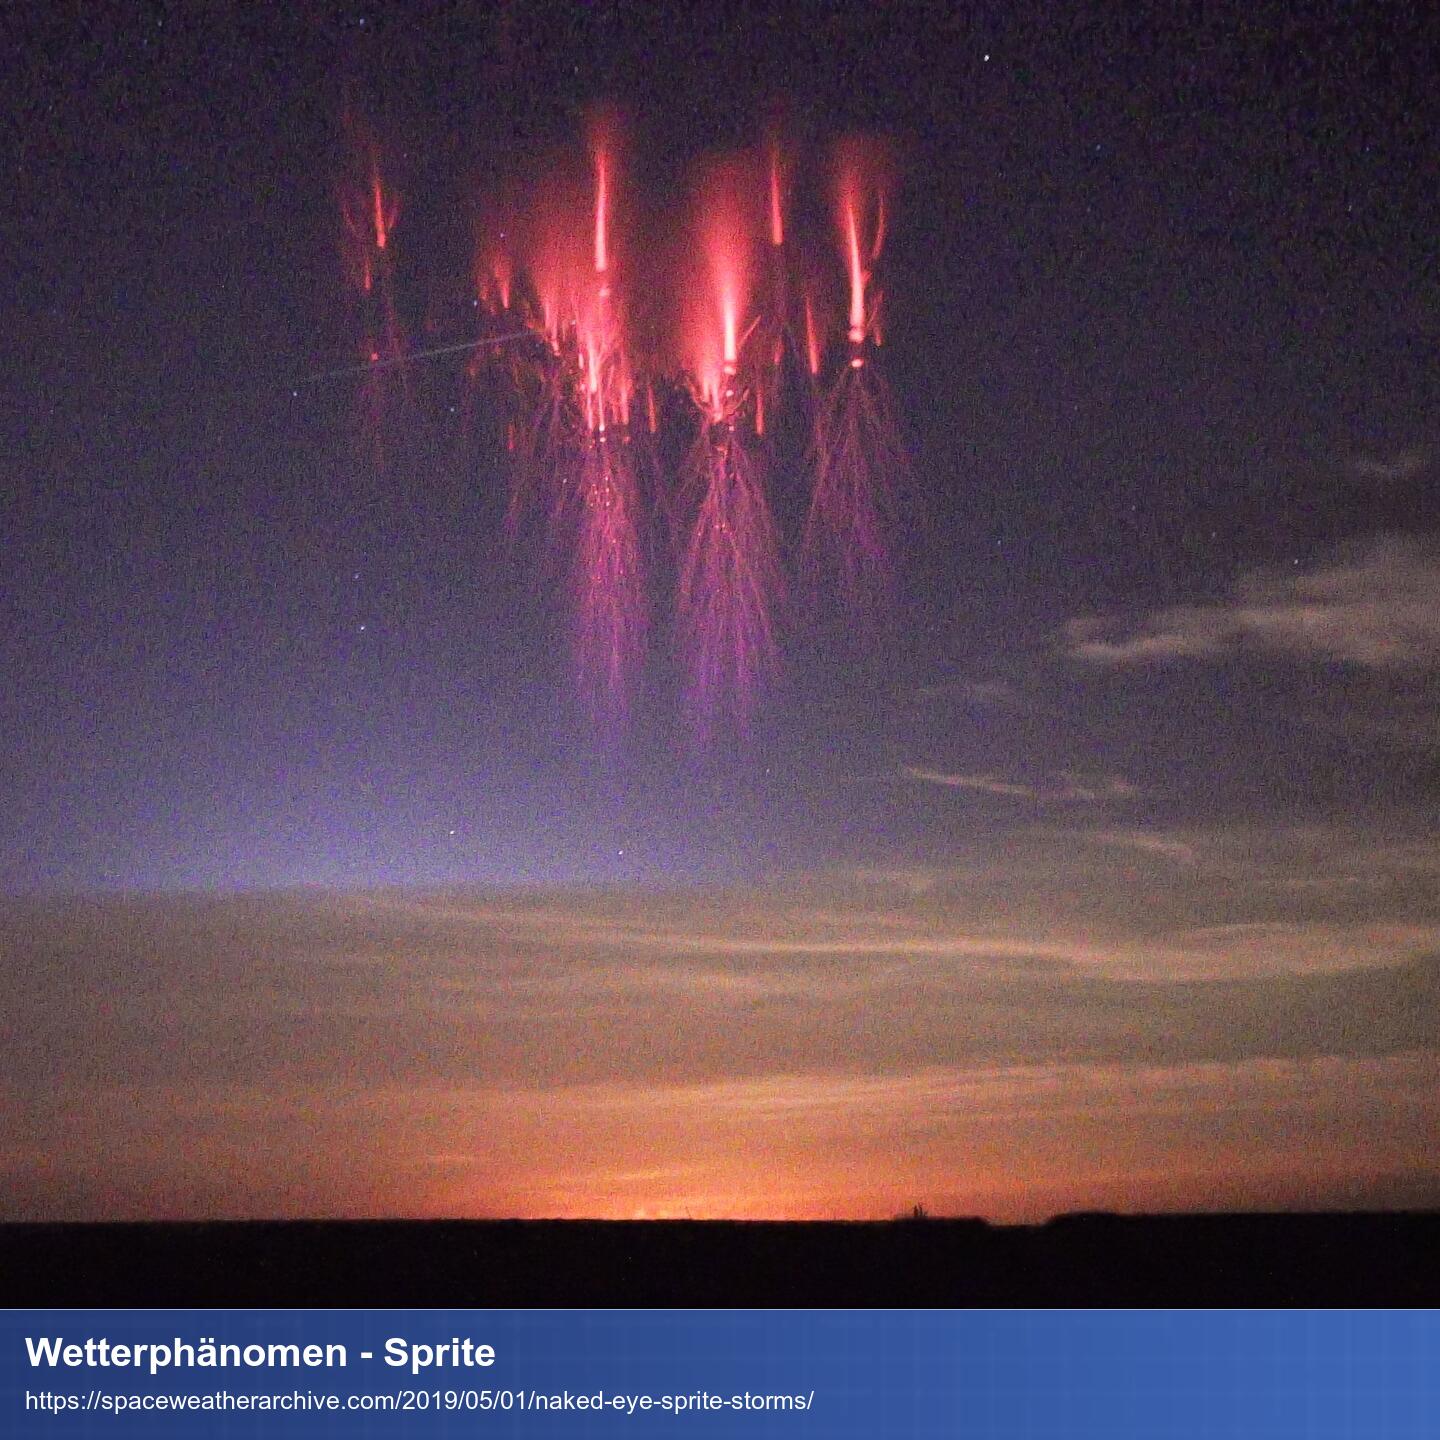 Foto von einem Abendhimmel. Weit oben sieht man rote Lichtsäulen die nach oben ragen und an deren Ursprung schlagen feine rote Blitze in dichten Gewebe nach unten aus.